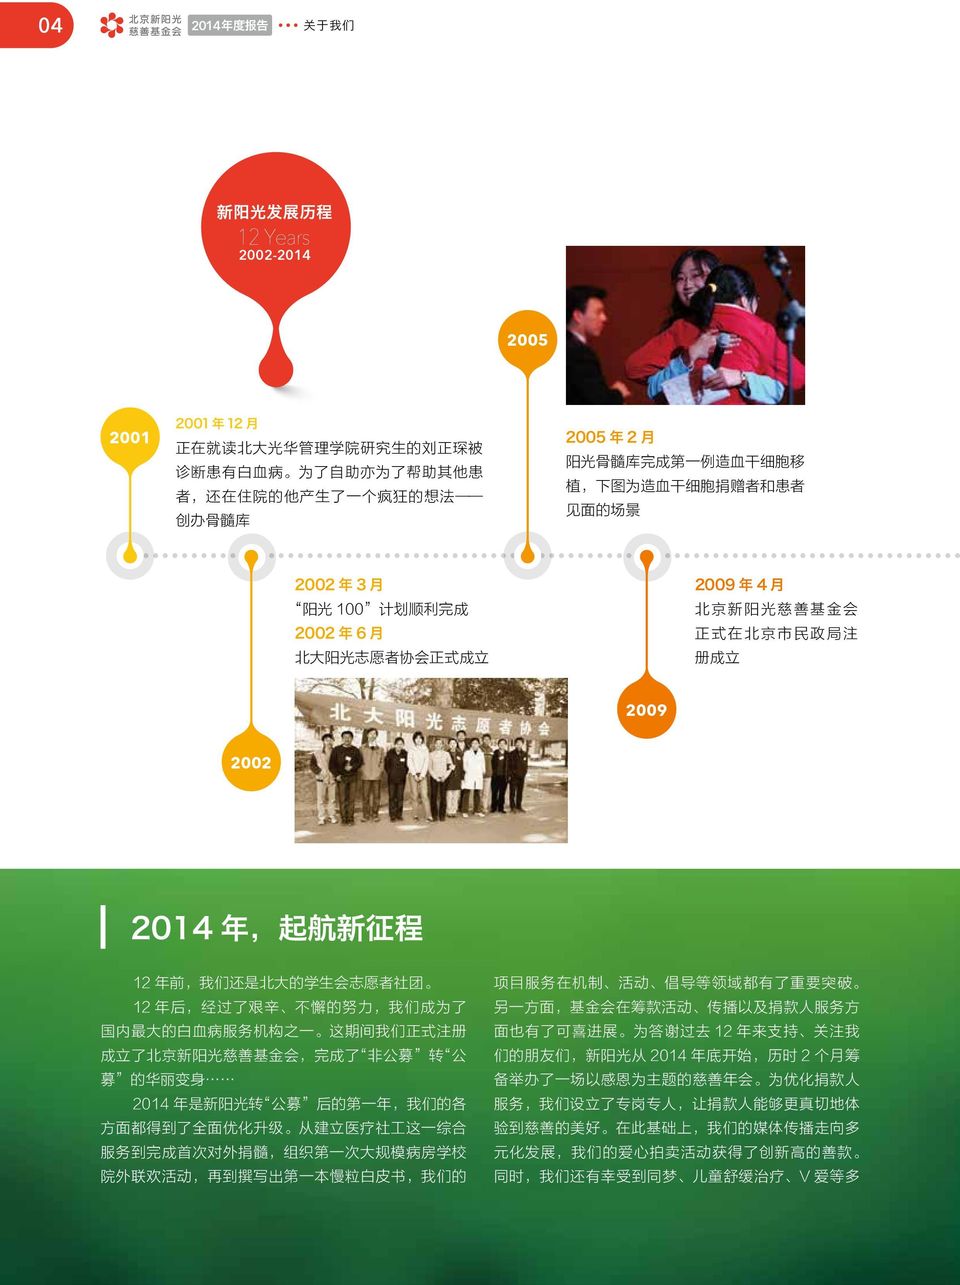 政 局 注 册 成 立 2009 2002 2014 年, 起 航 新 征 程 12 年 前, 我 们 还 是 北 大 的 学 生 会 志 愿 者 社 团 12 年 后, 经 过 了 艰 辛 不 懈 的 努 力, 我 们 成 为 了 国 内 最 大 的 白 血 病 服 务 机 构 之 一 这 期 间 我 们 正 式 注 册 成 立 了 北 京 新 阳 光 慈 善 基 金 会, 完 成 了 非 公